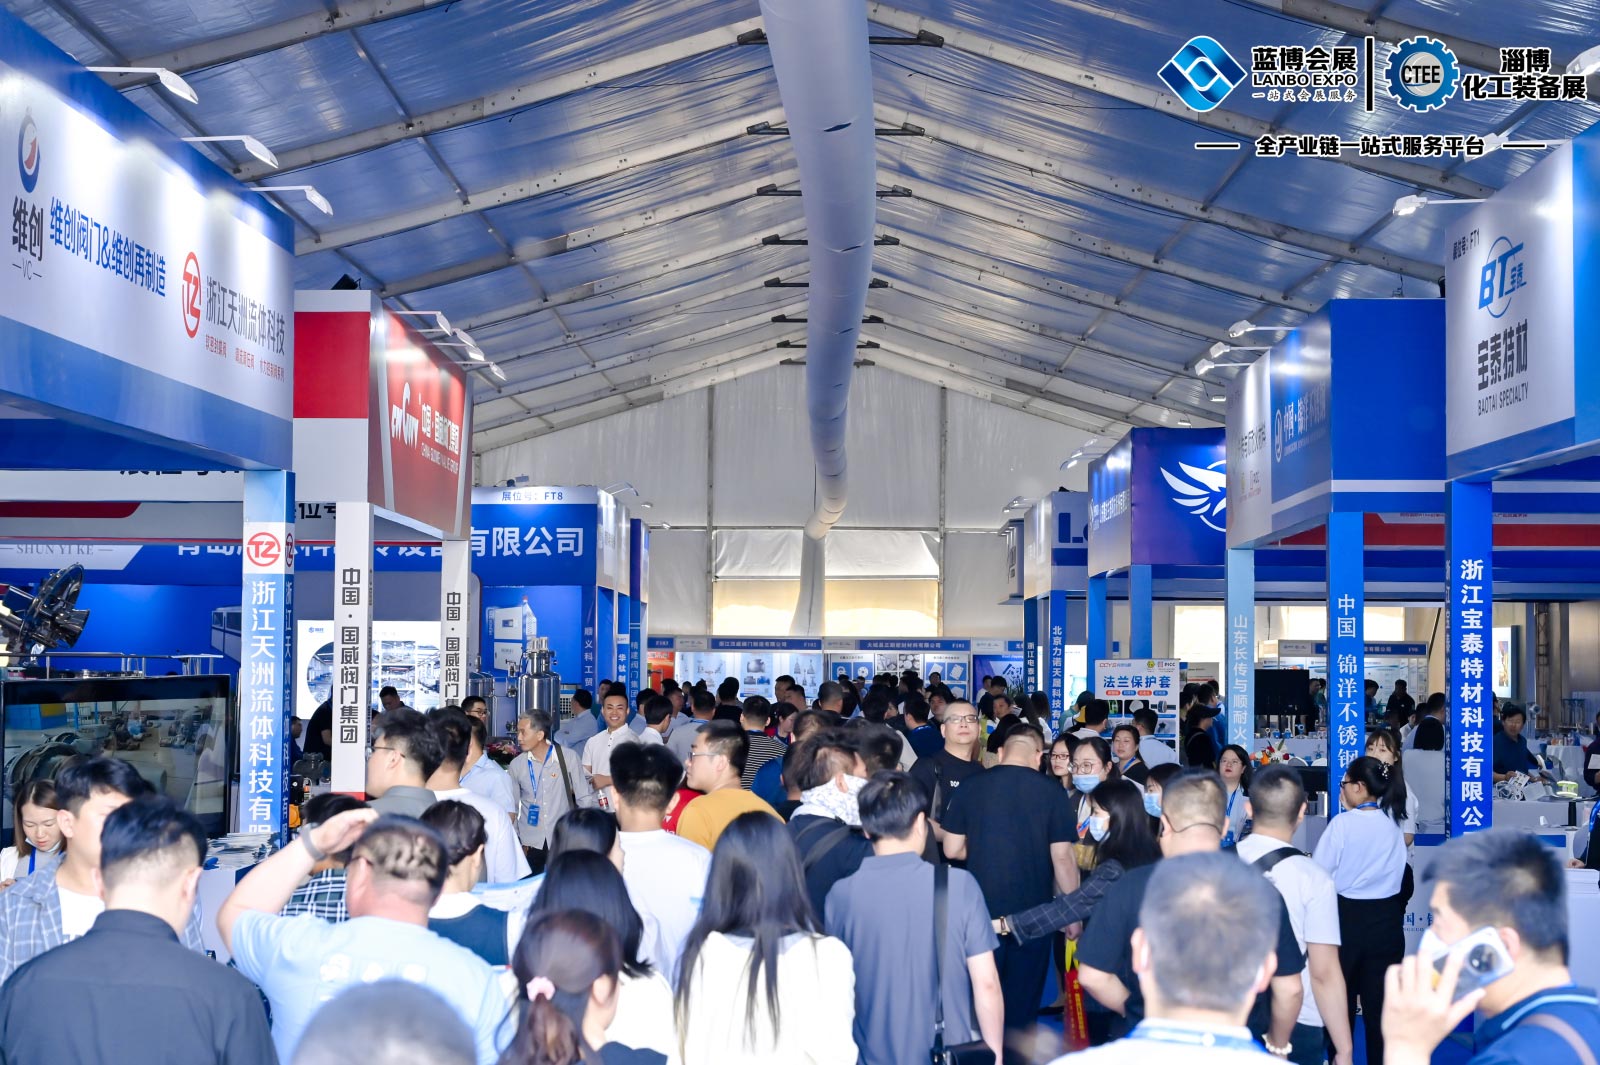 	2023第七届淄博化工科技装备展览会,淄博会展中心,联通路310号